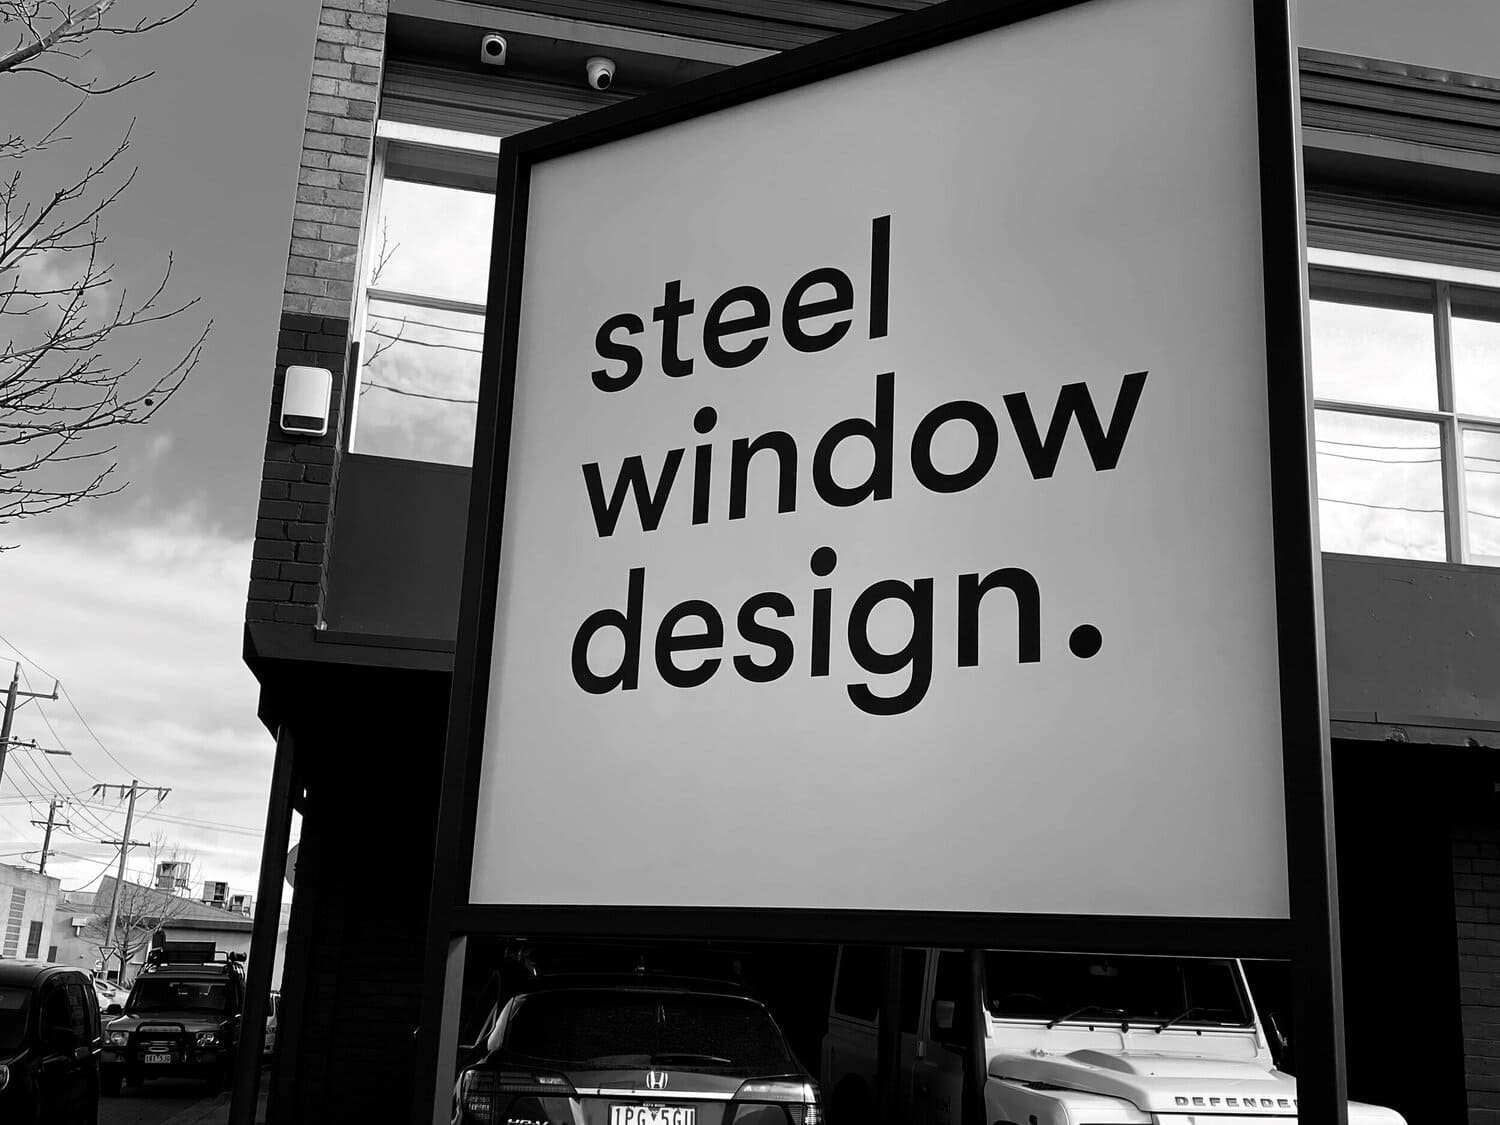 steel-window-design-factory-sign.jpg